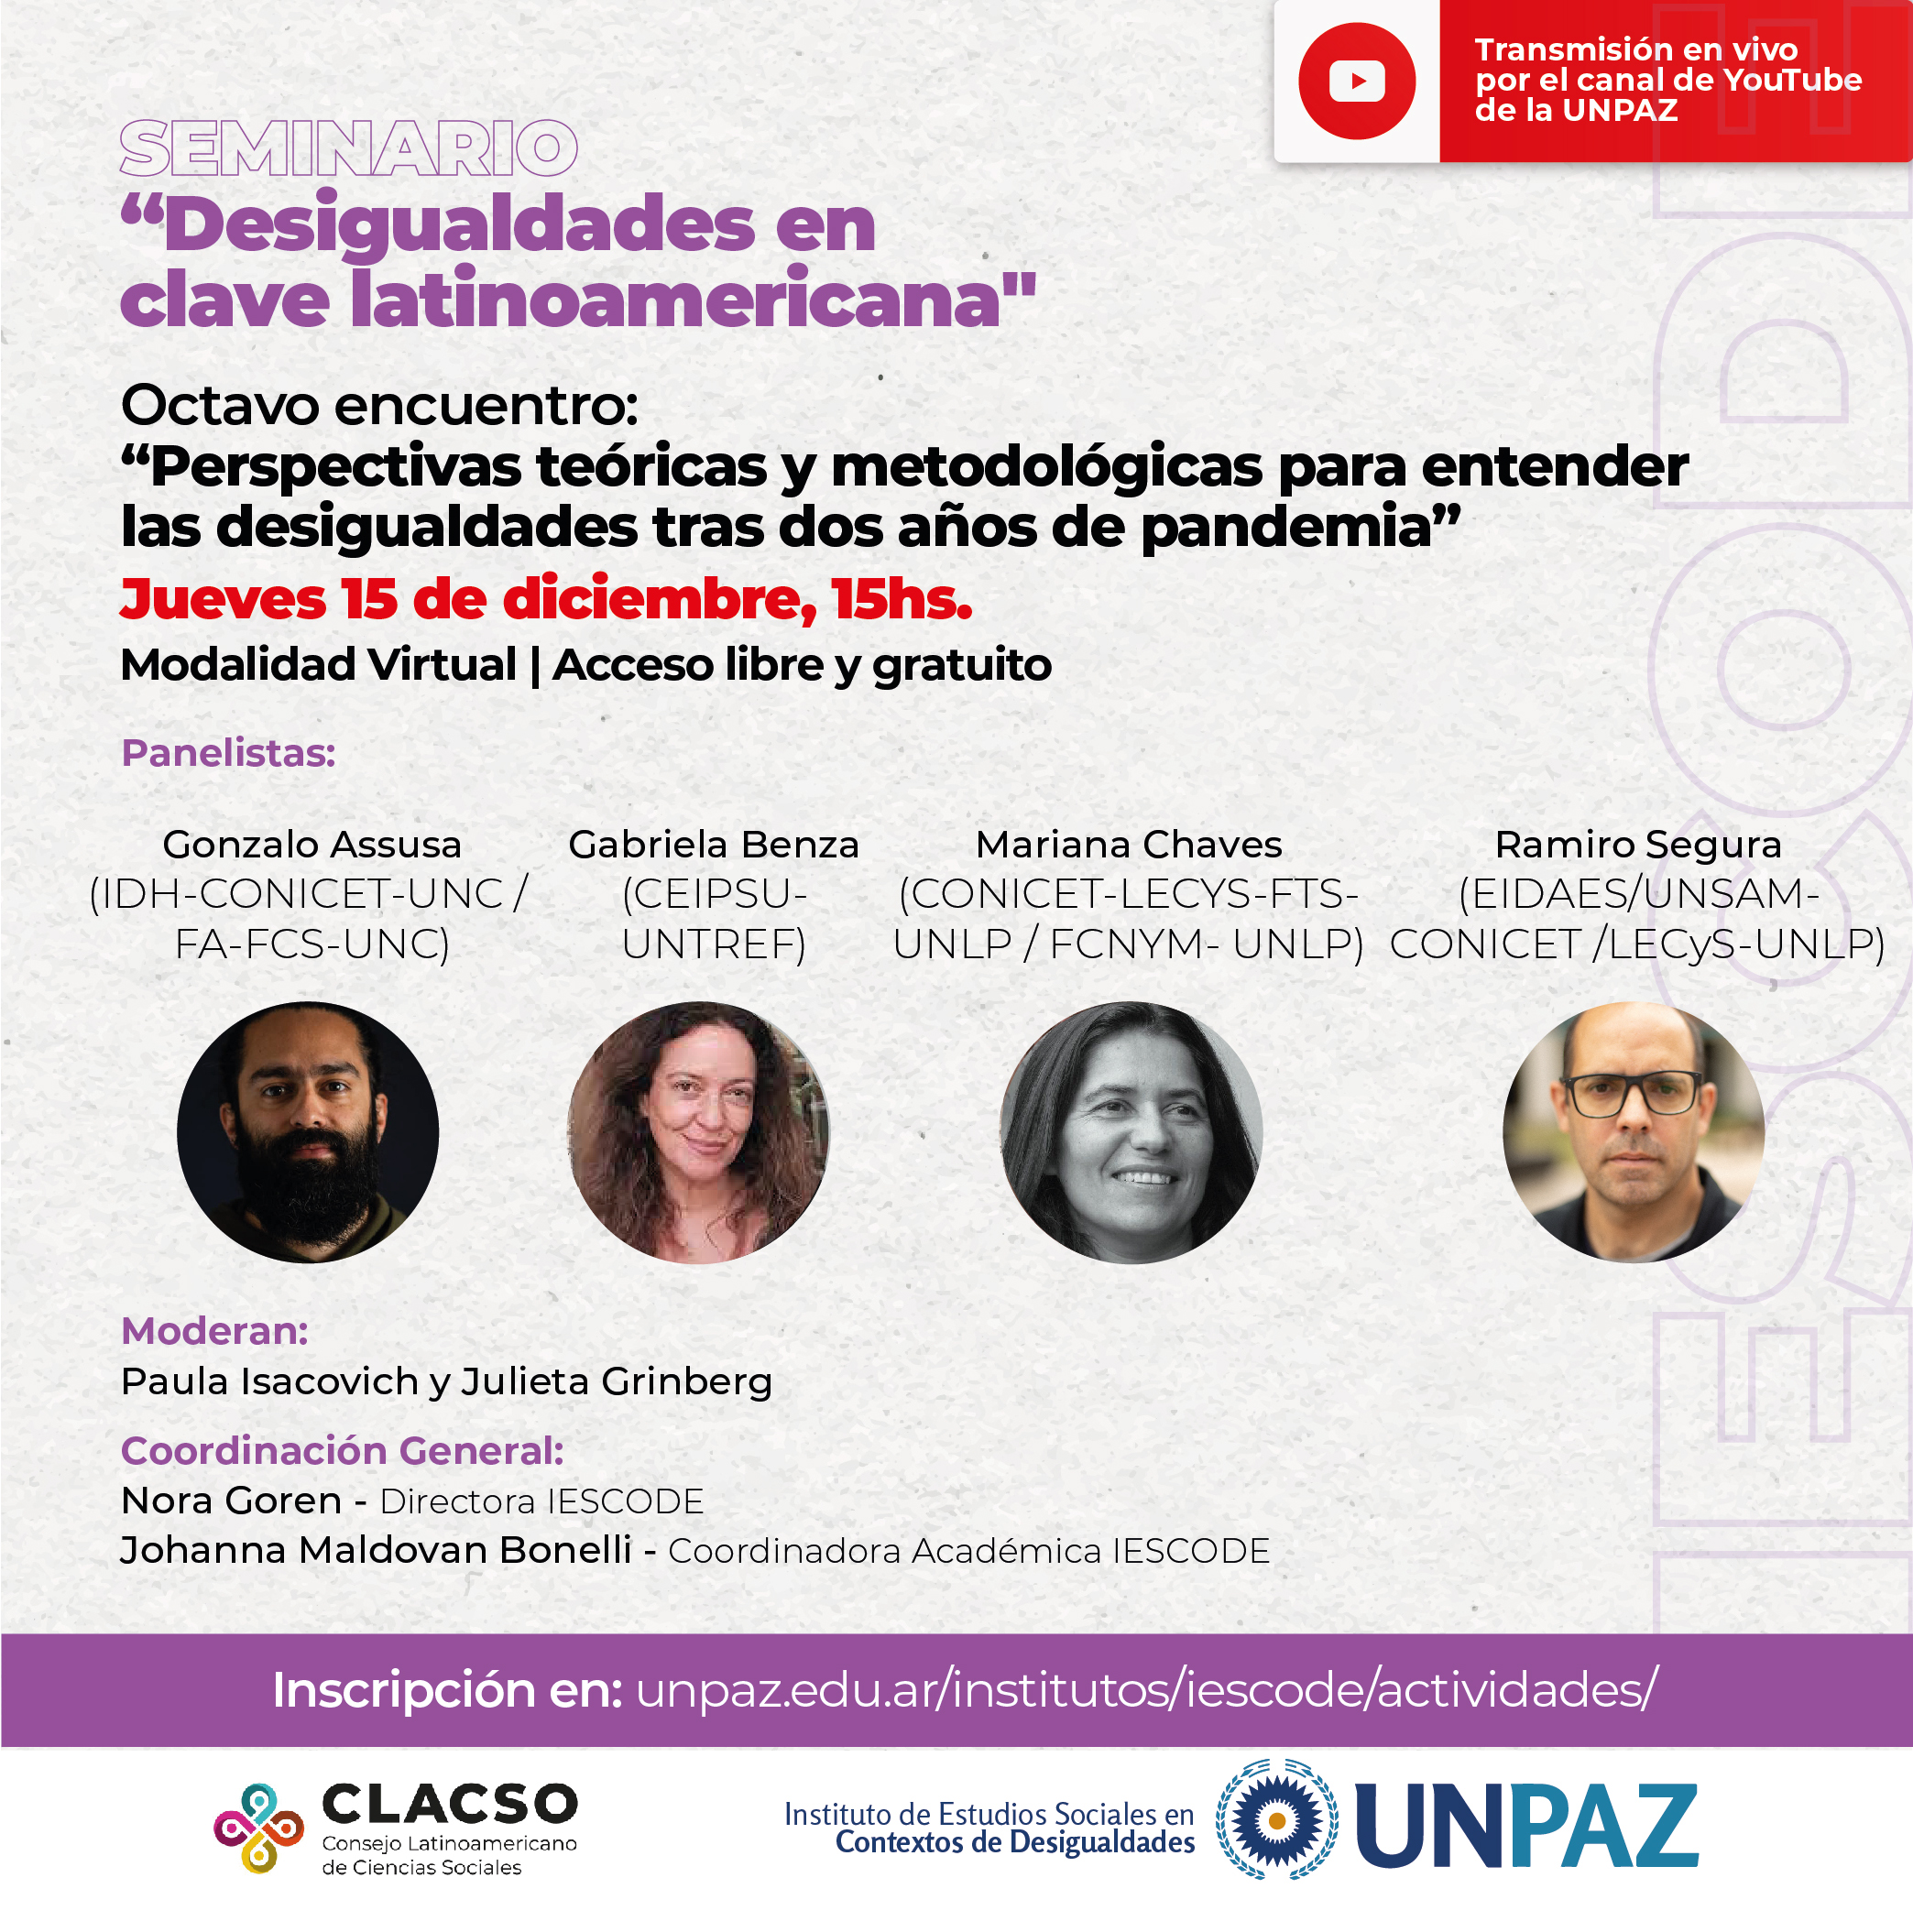 Octavo encuentro del seminario "Desigualdades en clave latinoamericana"